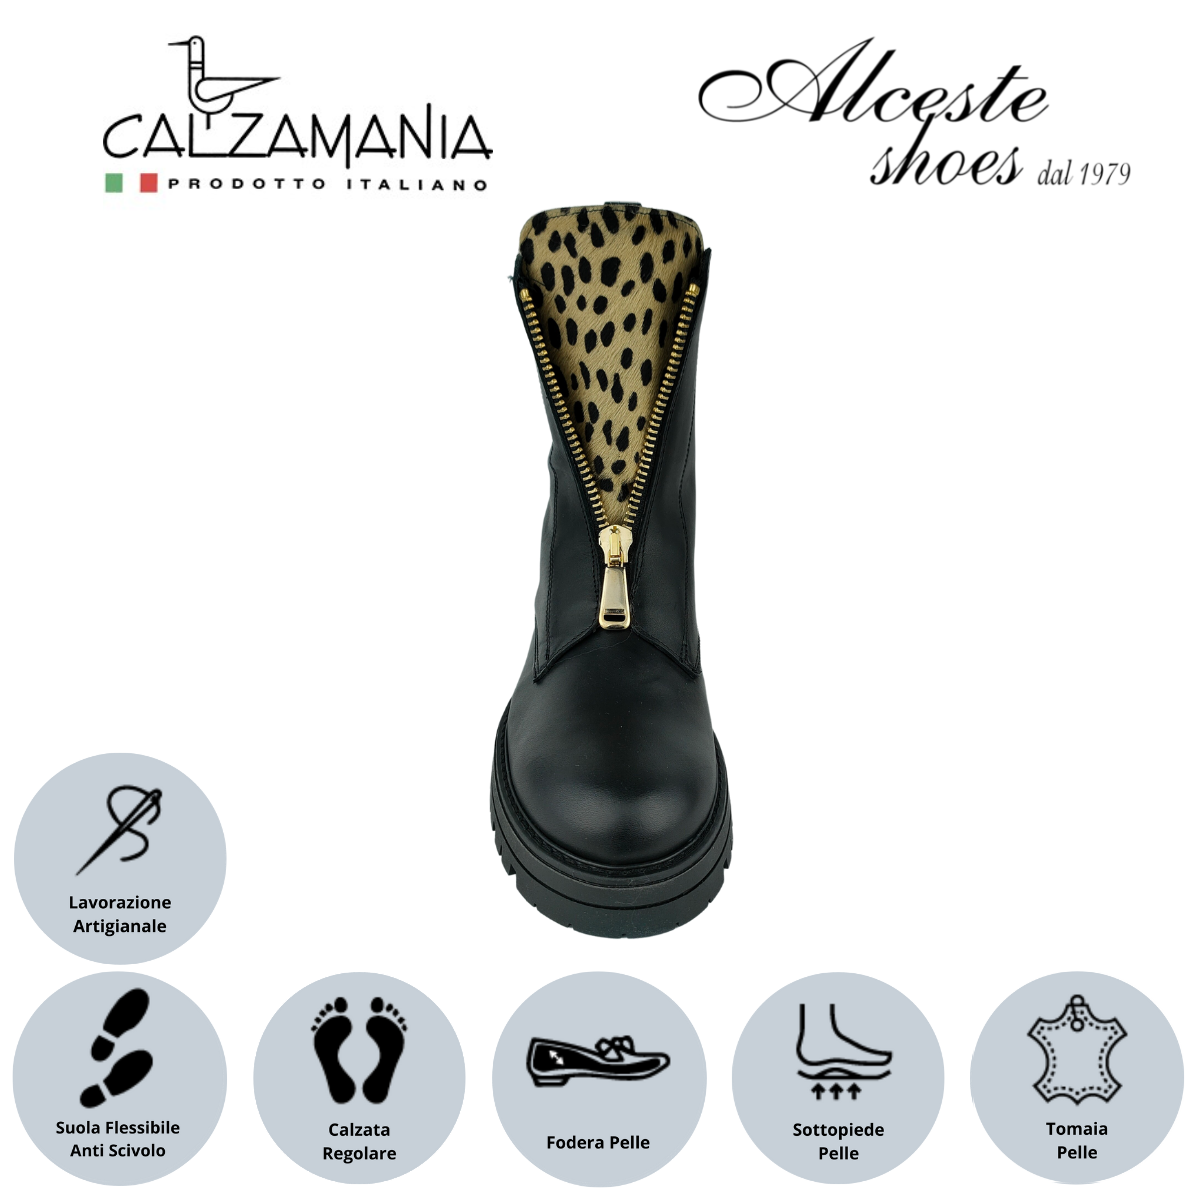 Anfibio Donna con Cerniera "Calzamania" Art. 9052 in Pelle Nero e Cavallino Maculato Alceste Shoes 12